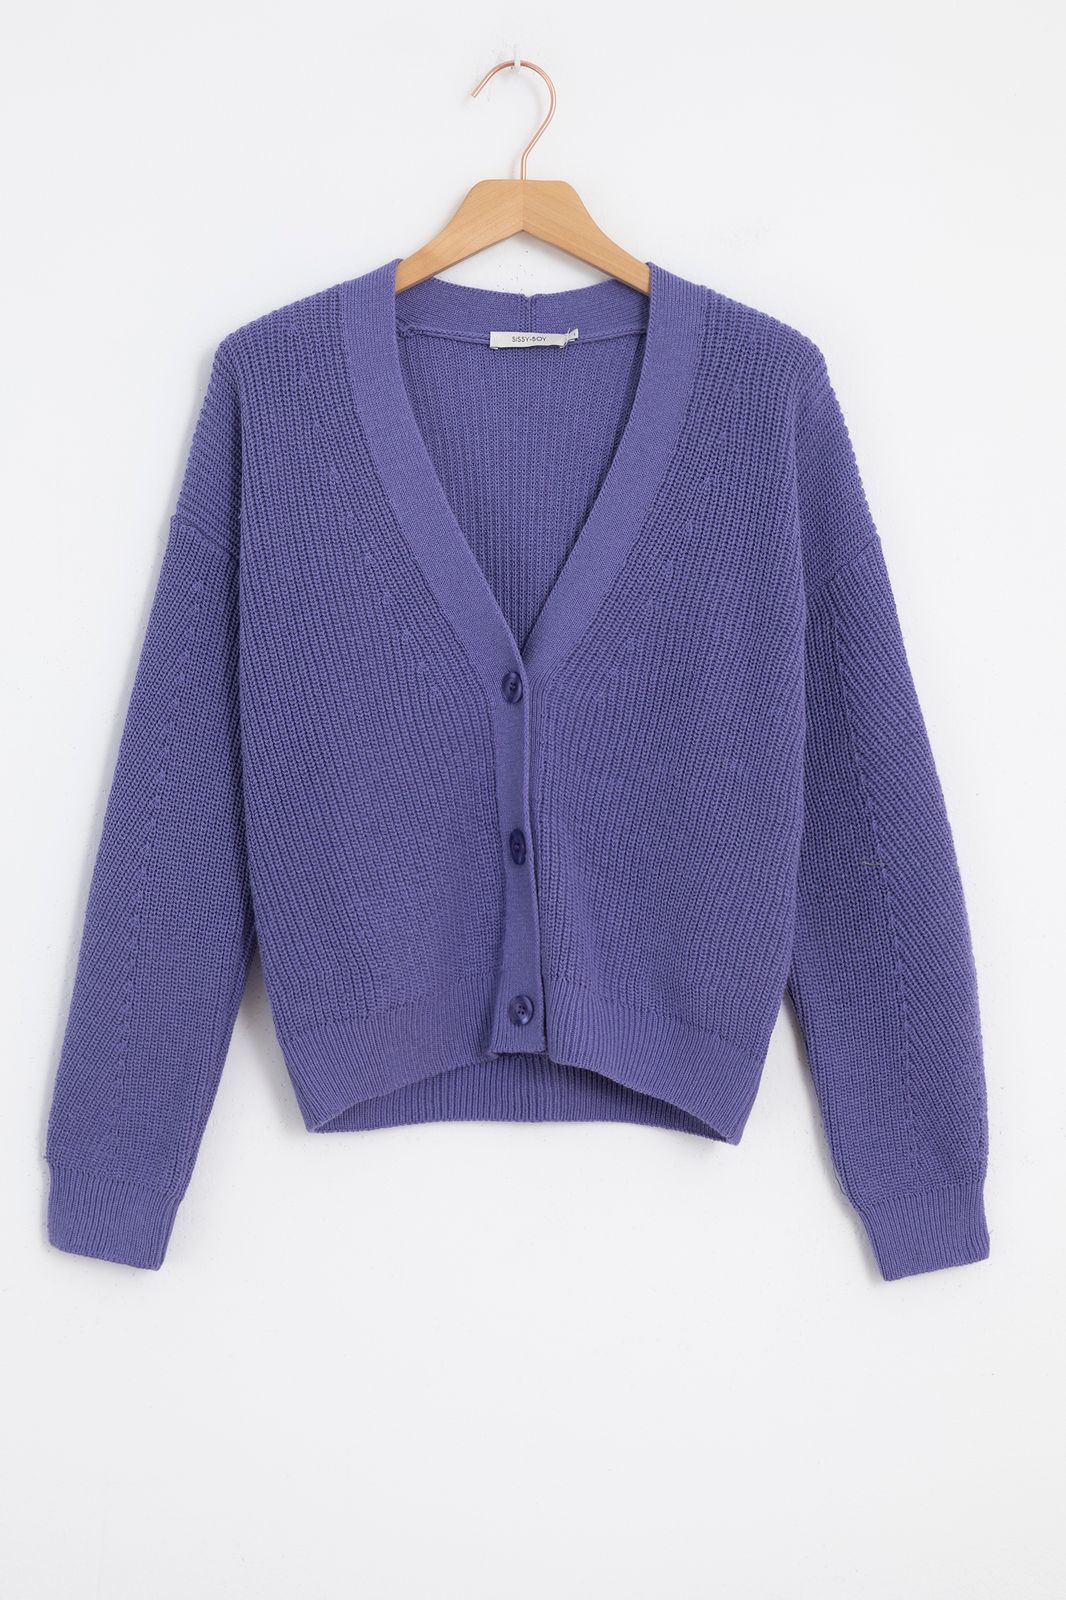 Gilet tricoté avec boutons - violet